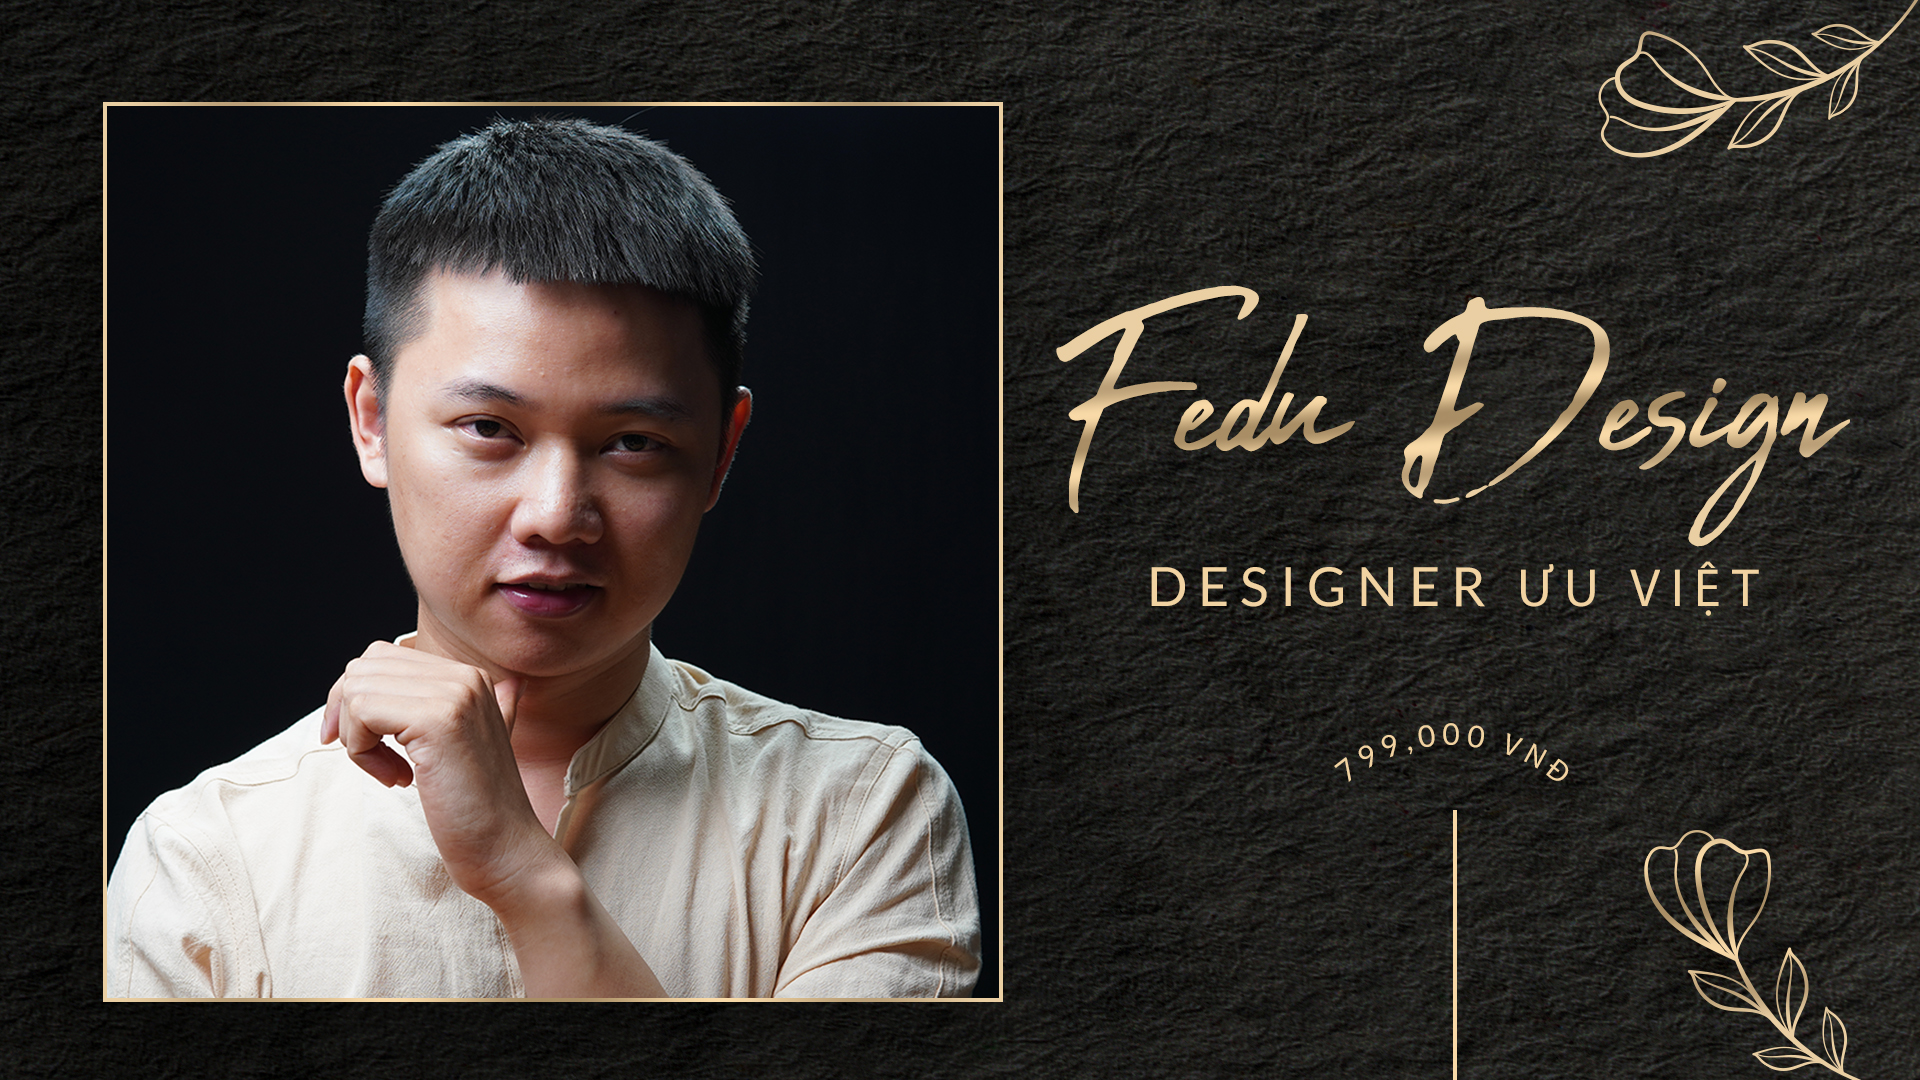 Share Combo Học Thiết Kế Đồ Họa Của Fedu Thầy Việt - Designer siêu việt từ con số 0